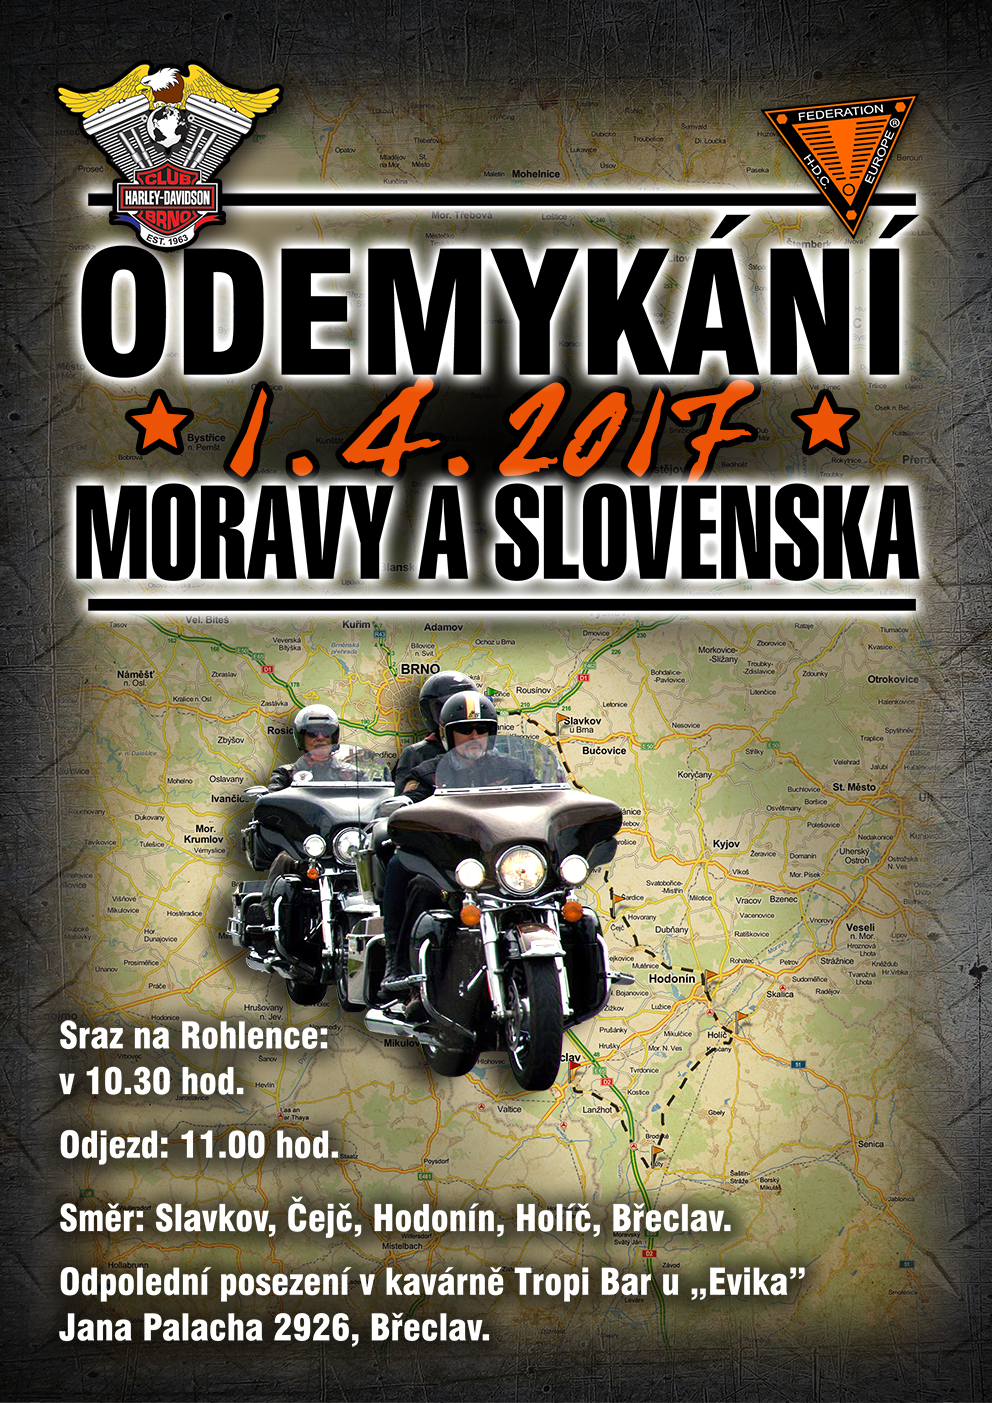 Odemykání Moravy a Slovenska.jpg